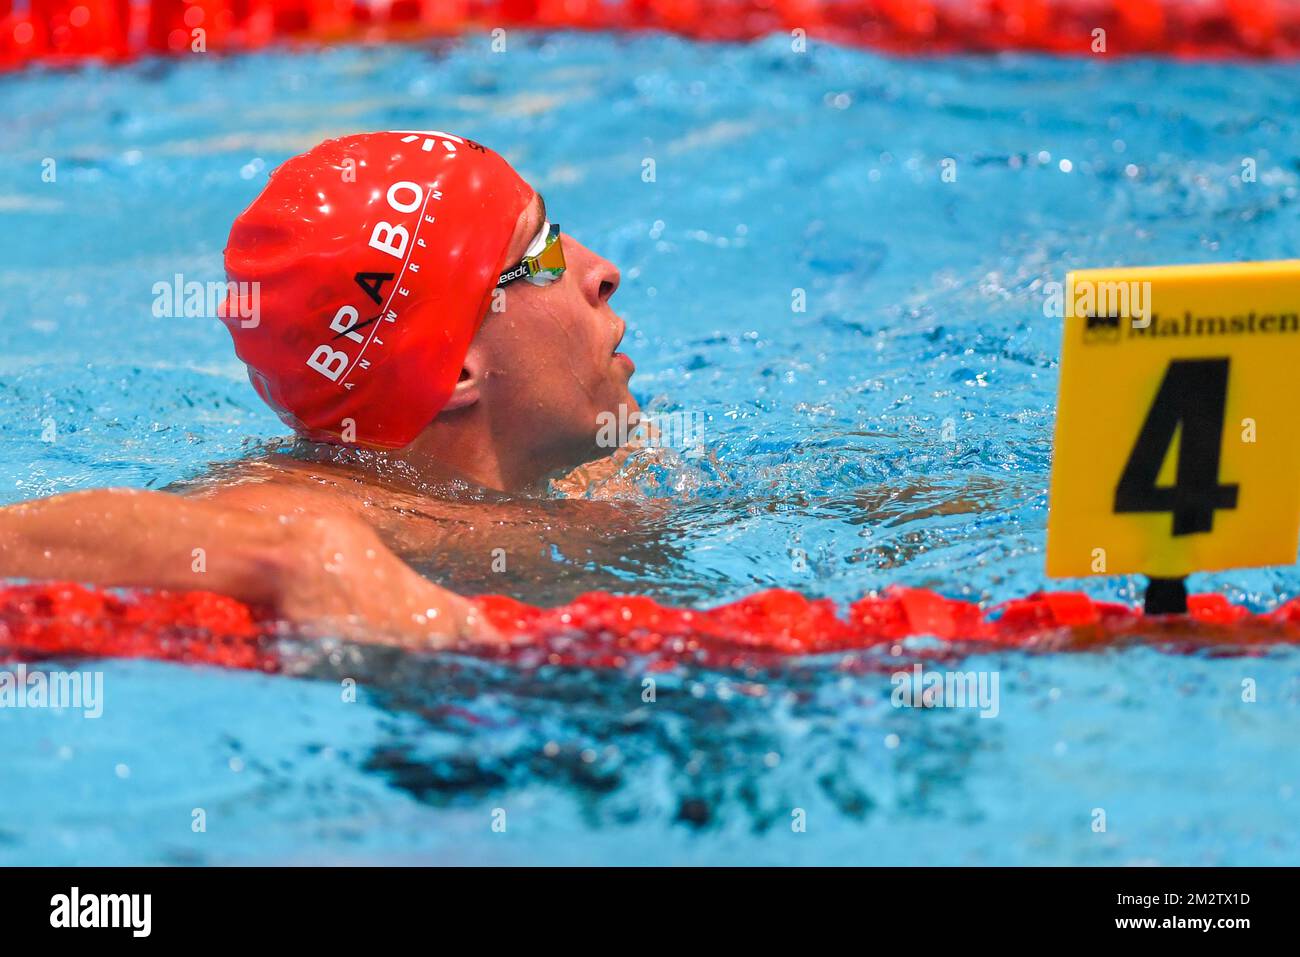 Belge Pieter Timmers photographié après le freestyle masculin 50m le deuxième jour des Championnats de natation Belge, samedi 18 mai 2019 à Anvers. BELGA PHOTO LUC CLAESSEN Banque D'Images